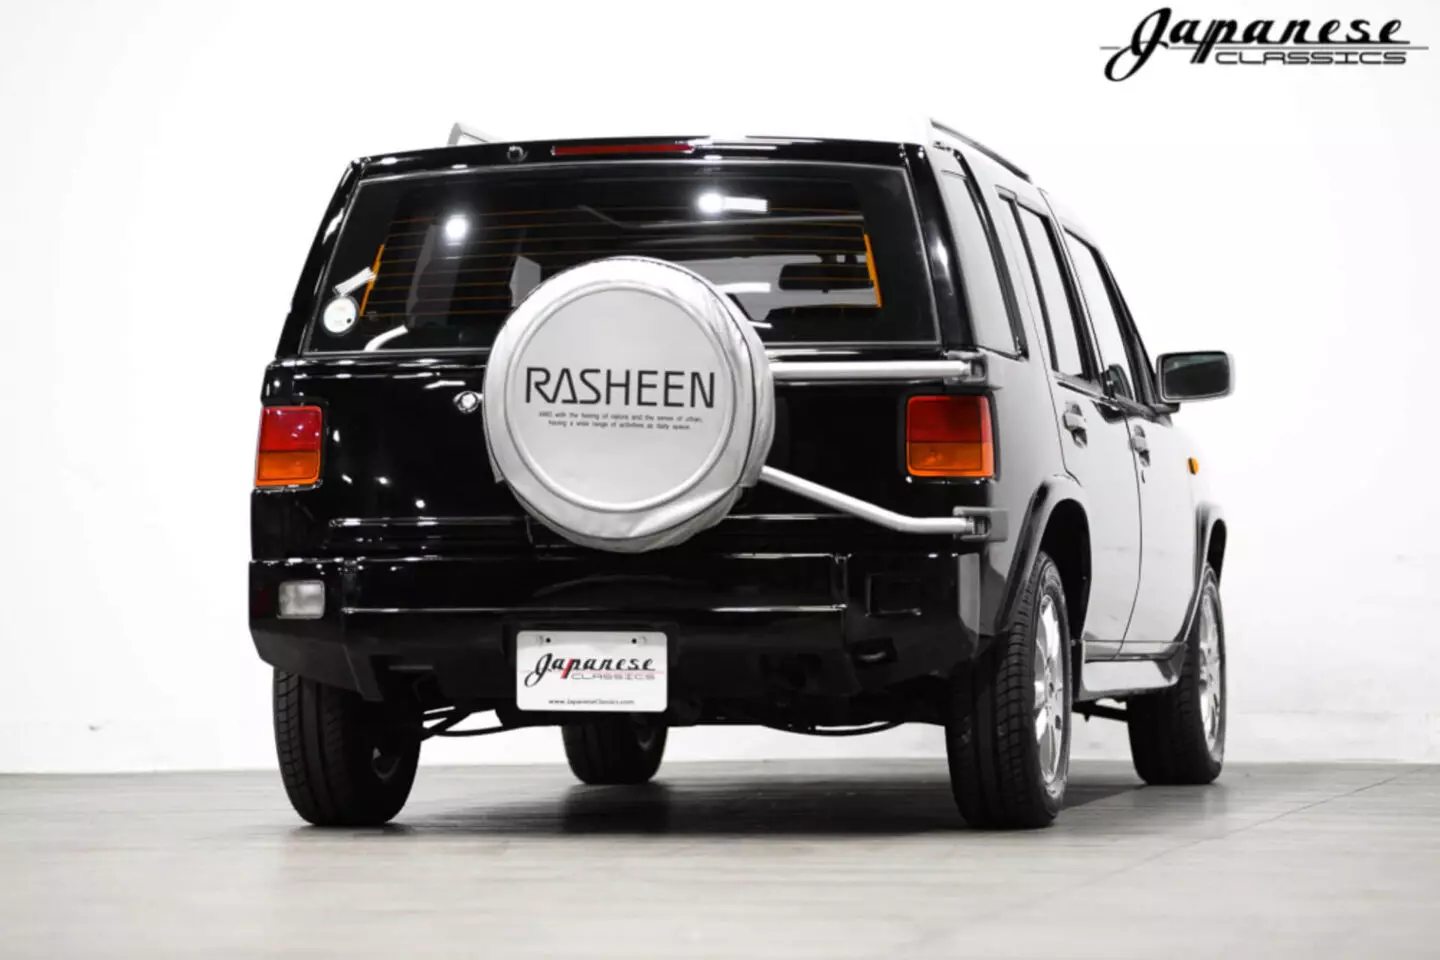 Nissan Rasheen Kab